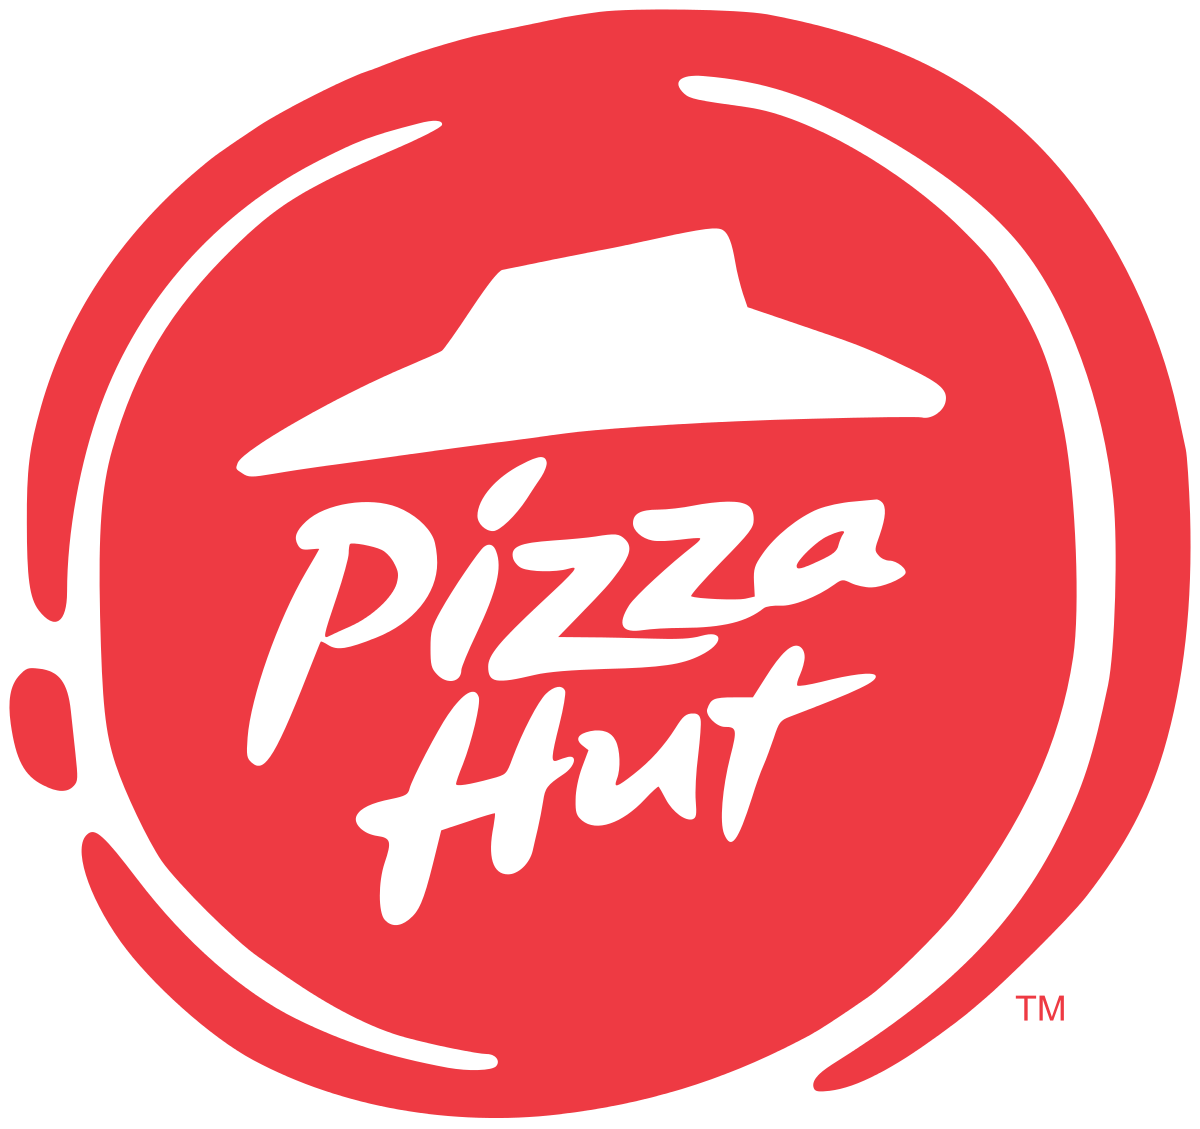 PIZZA HUT | MENU BOARD on Behance